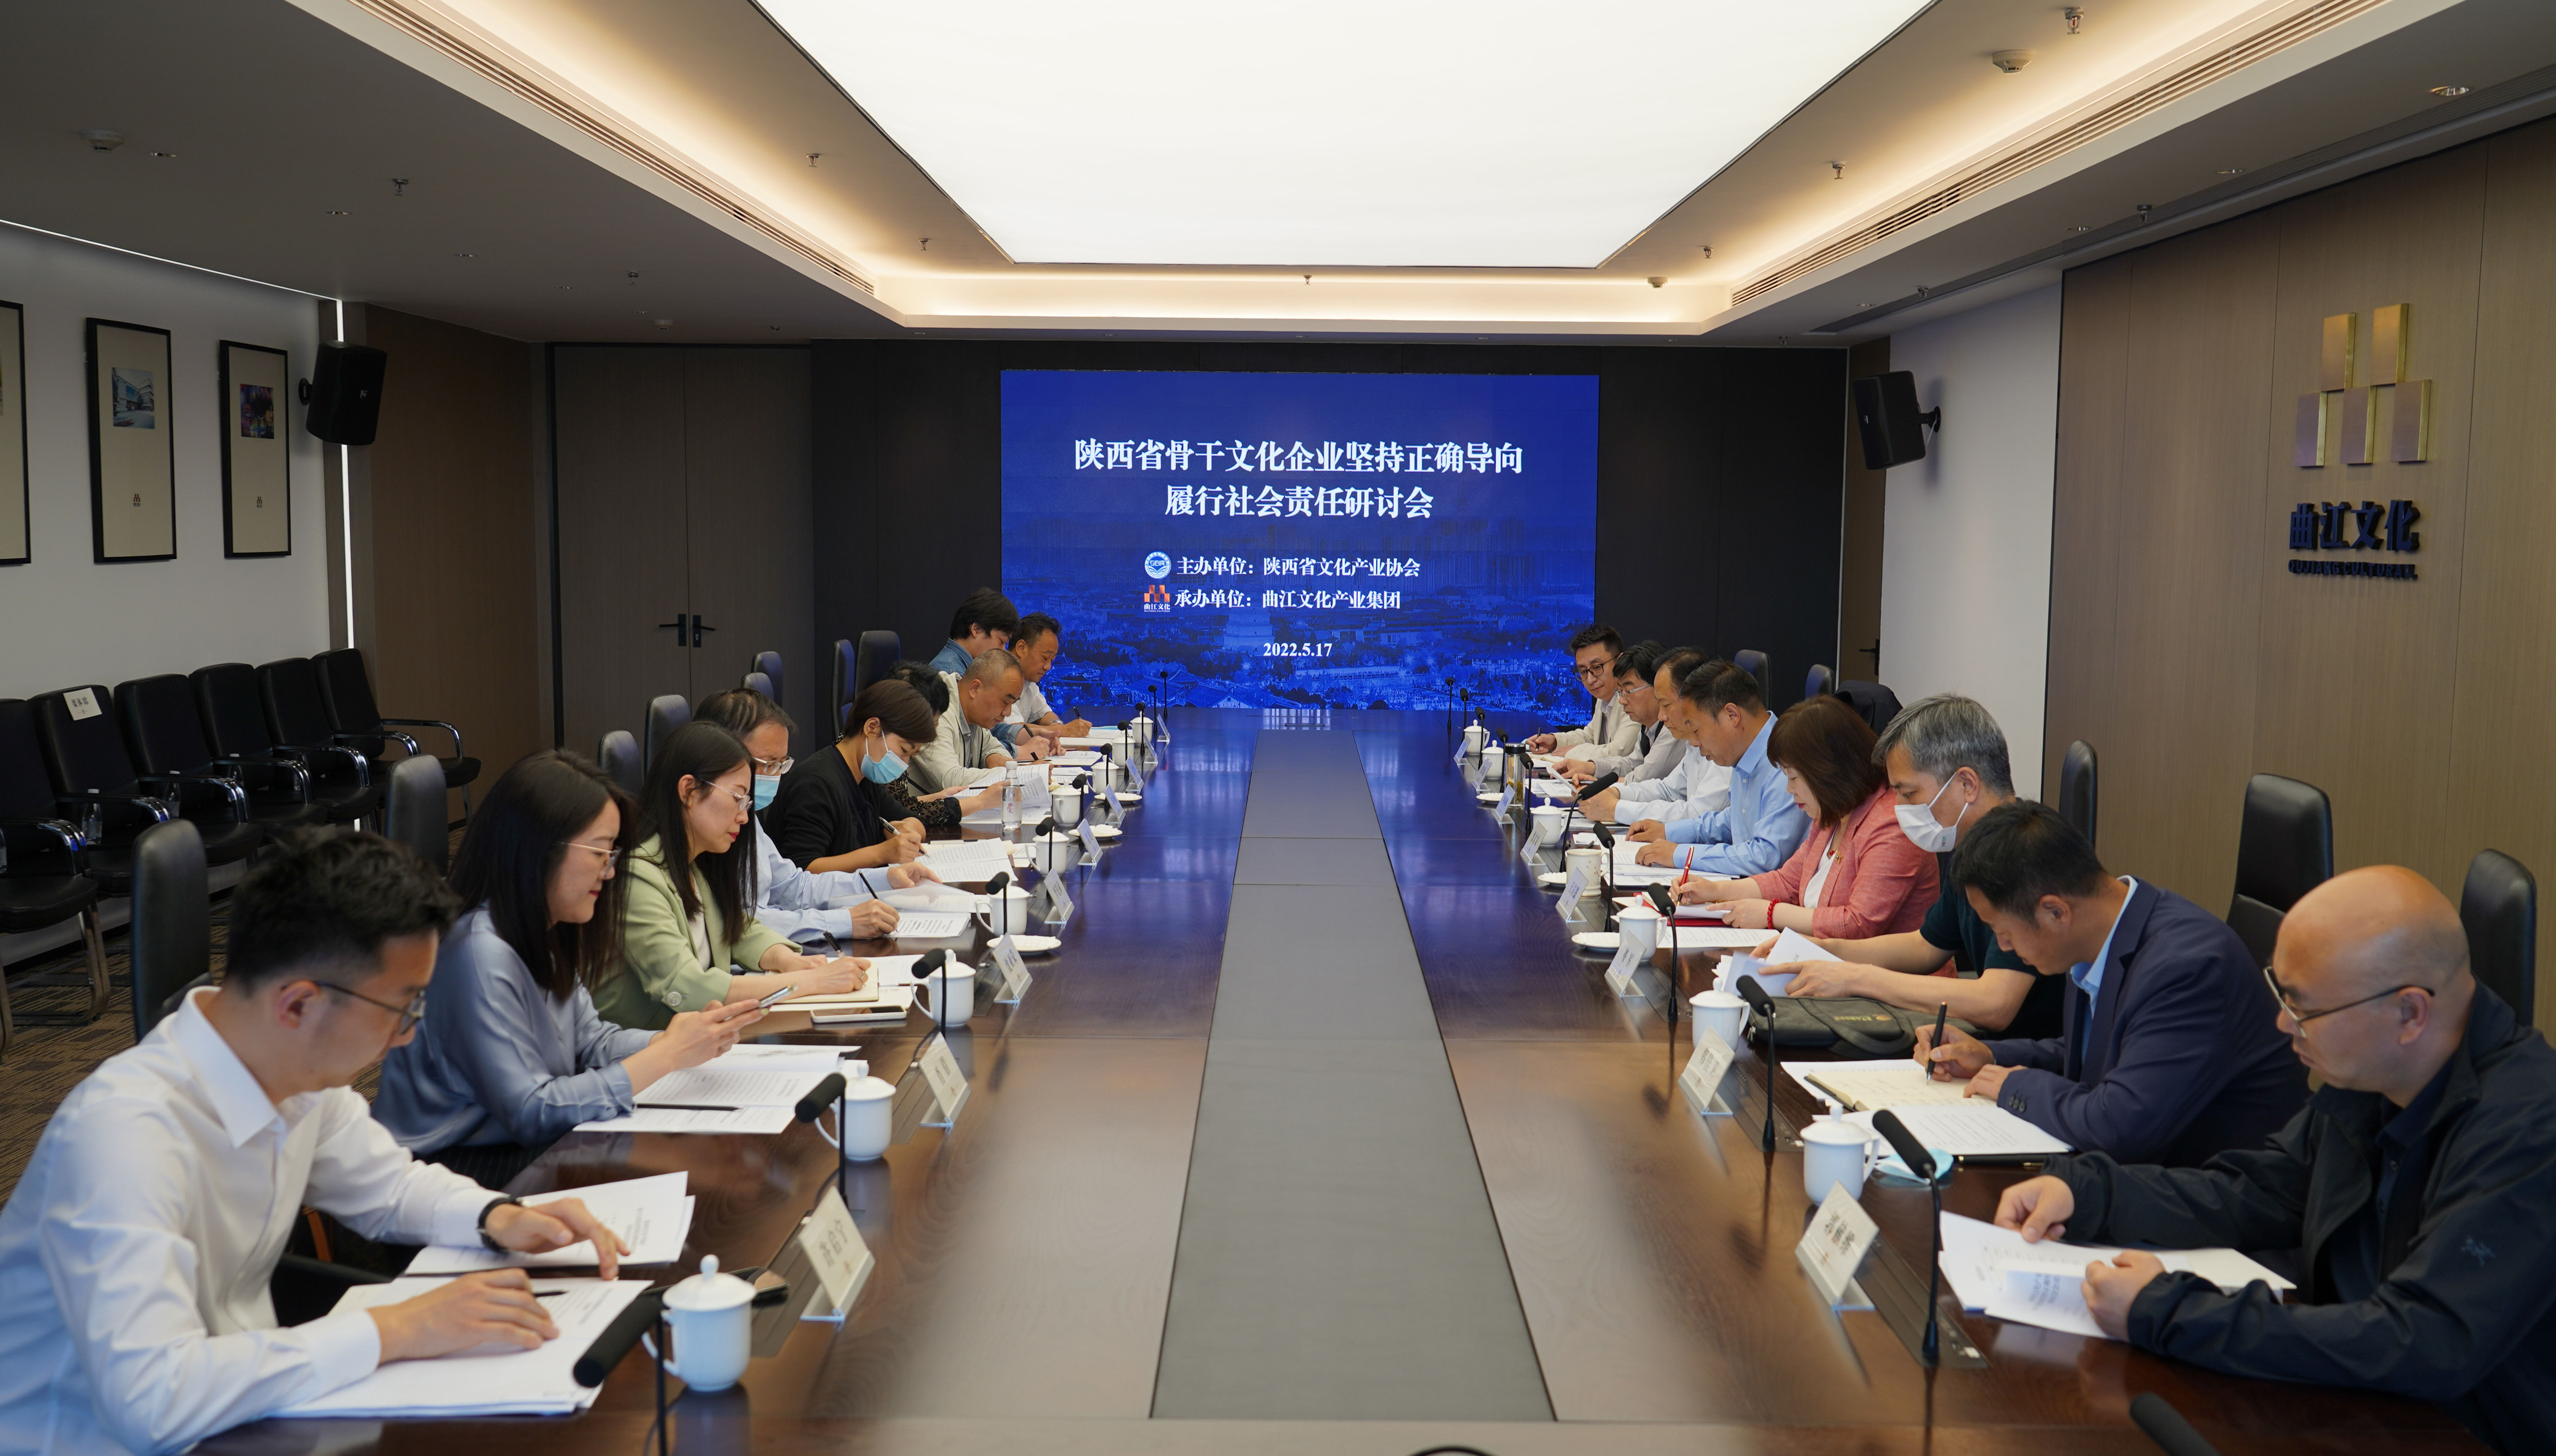 陕西省文化产业协会组织召开骨干文化企业坚持正确导向 履行社会责任研讨会